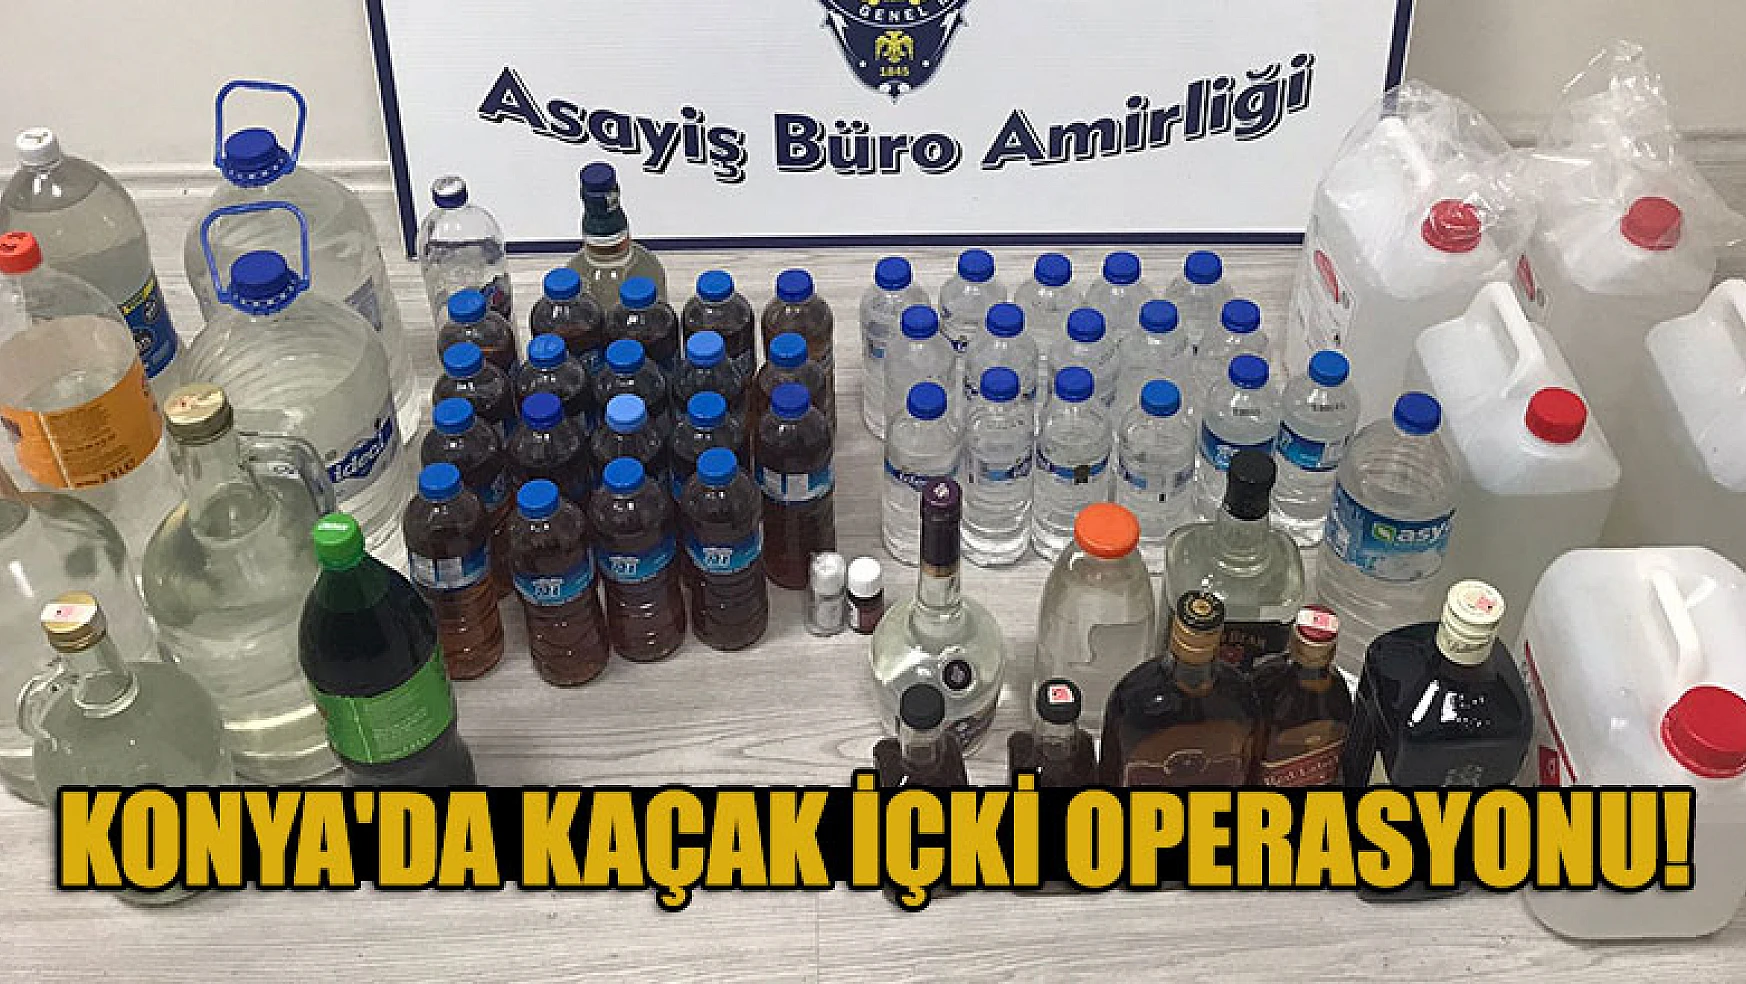 Konya'da kaçak içki operasyonu